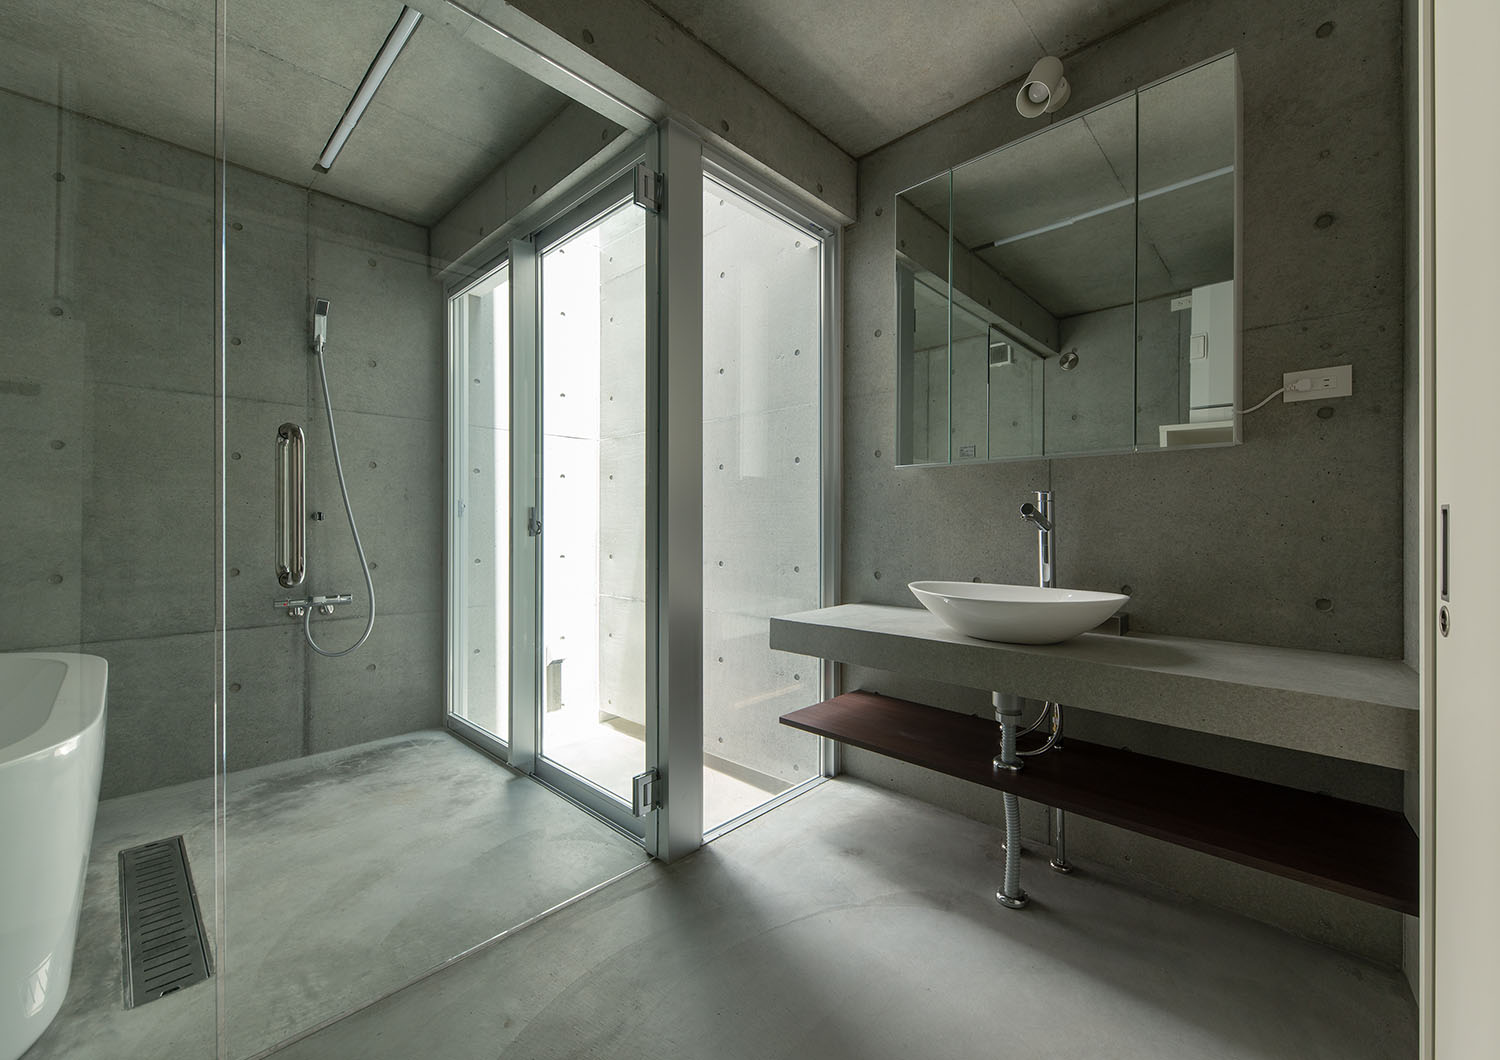 ガラス扉で仕切られているコンクリート壁の洗面所と浴室・デザイン住宅